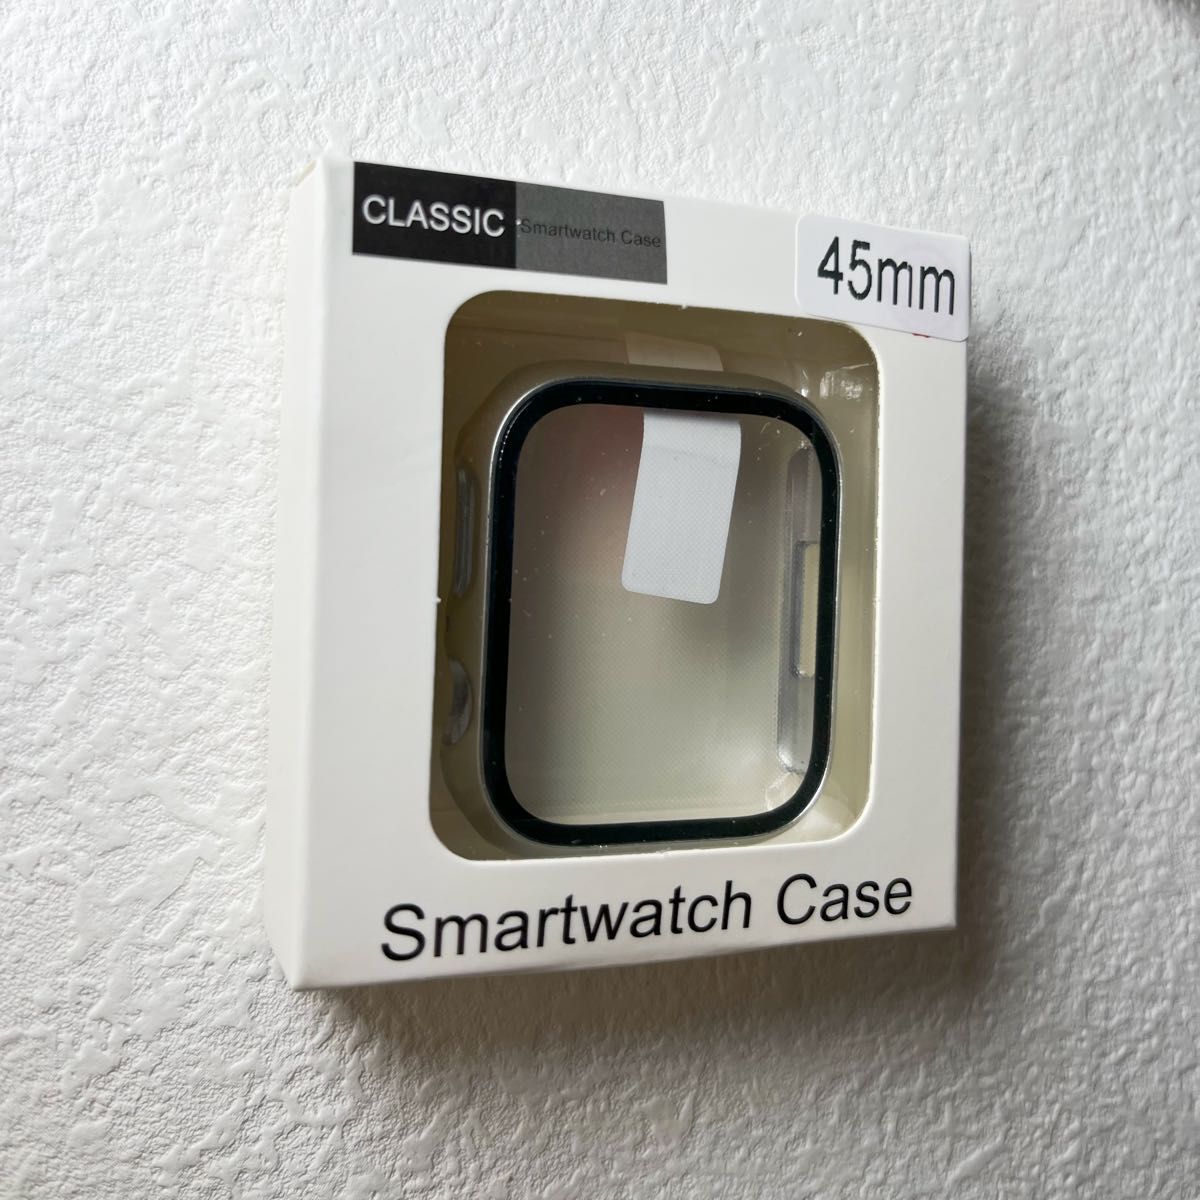 Apple watchアップルウォッチケース カバー 男女Series 7/8/9 スターライト マット 45mm